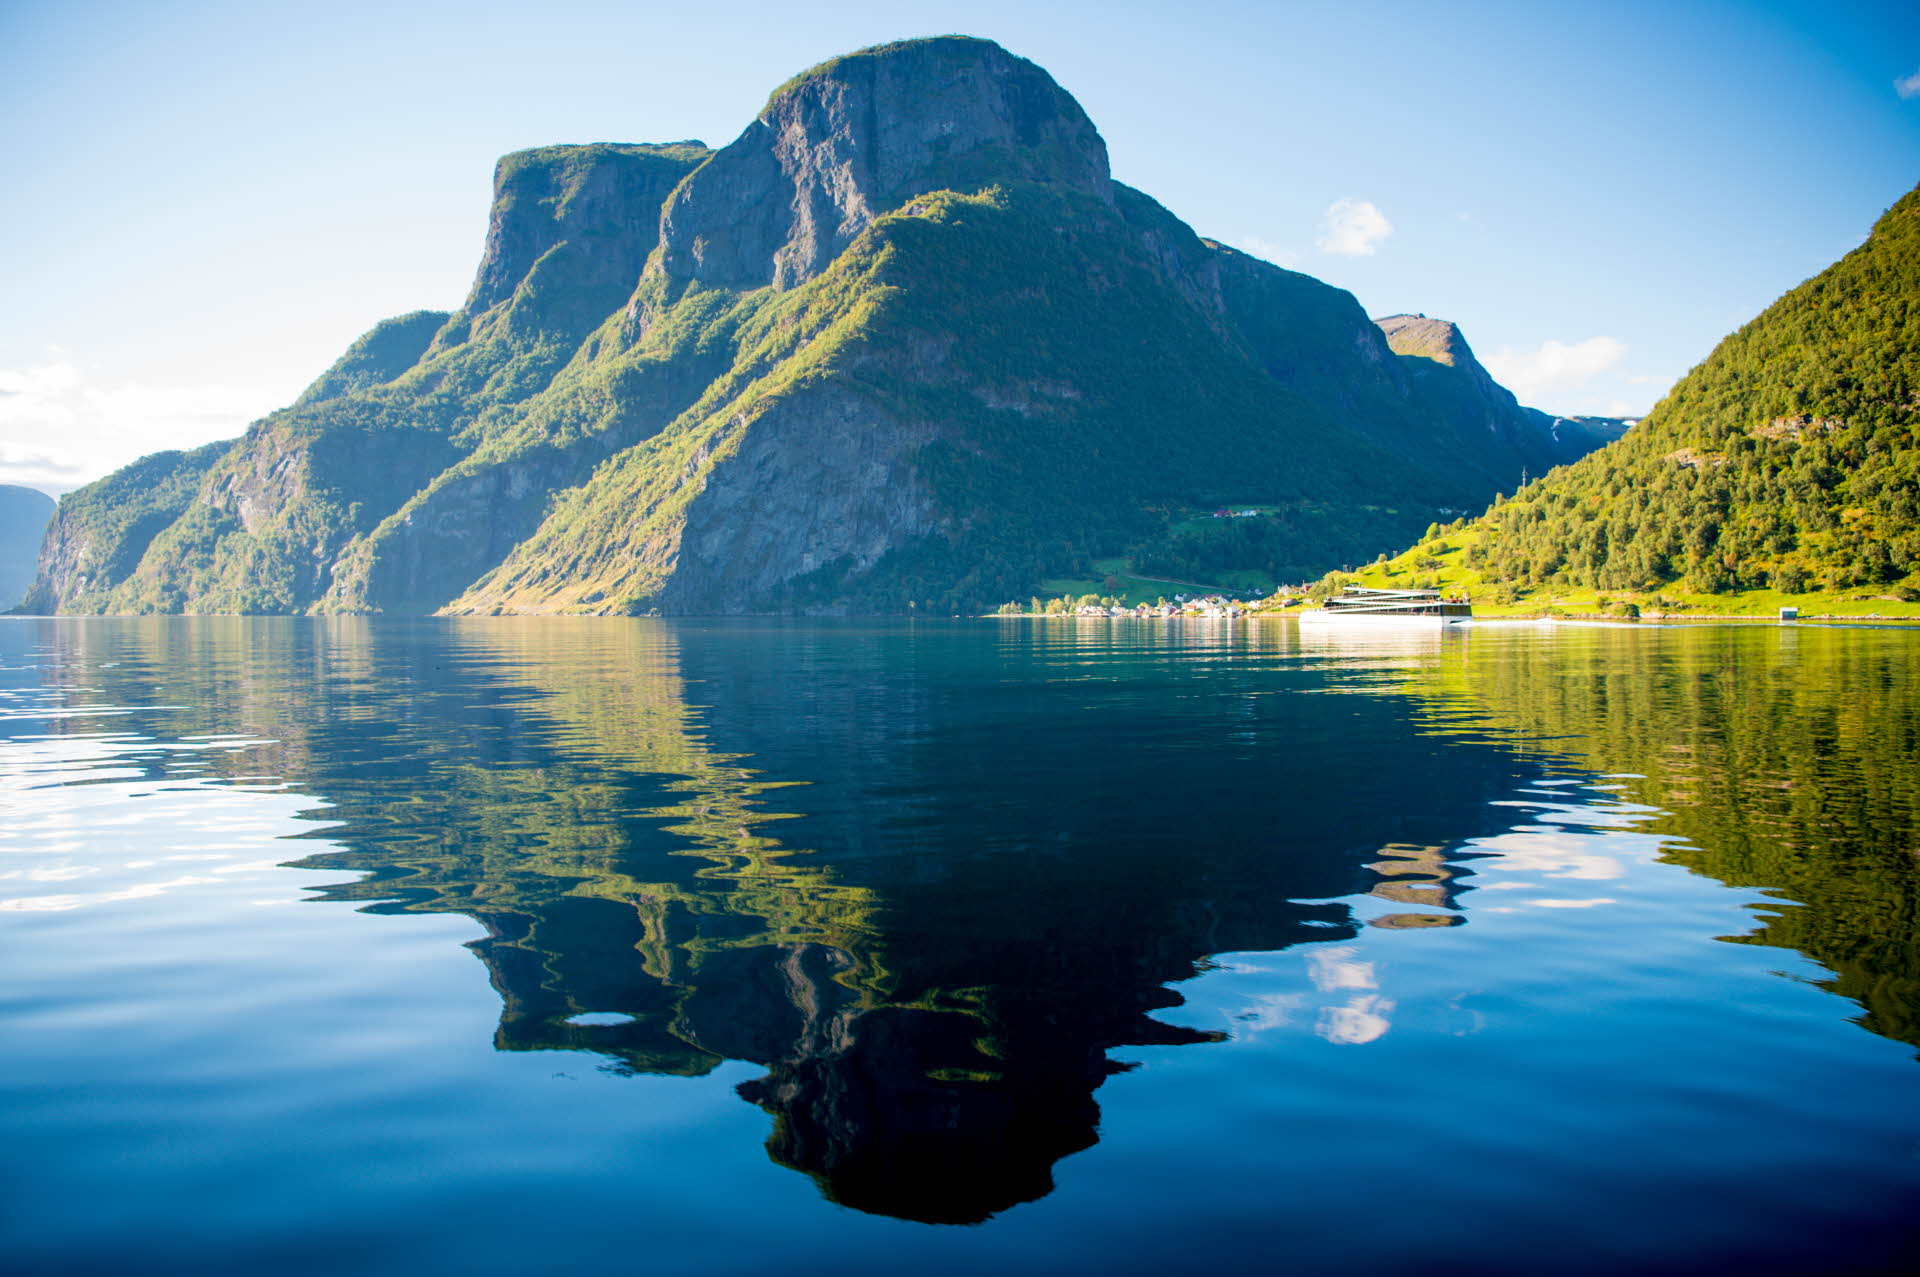 ある夏の日、ビジョンオブフィヨルドが遠くを航海しているとき鏡のように映るネーロイフィヨルド(Nærøyfjord)の急峻な山々